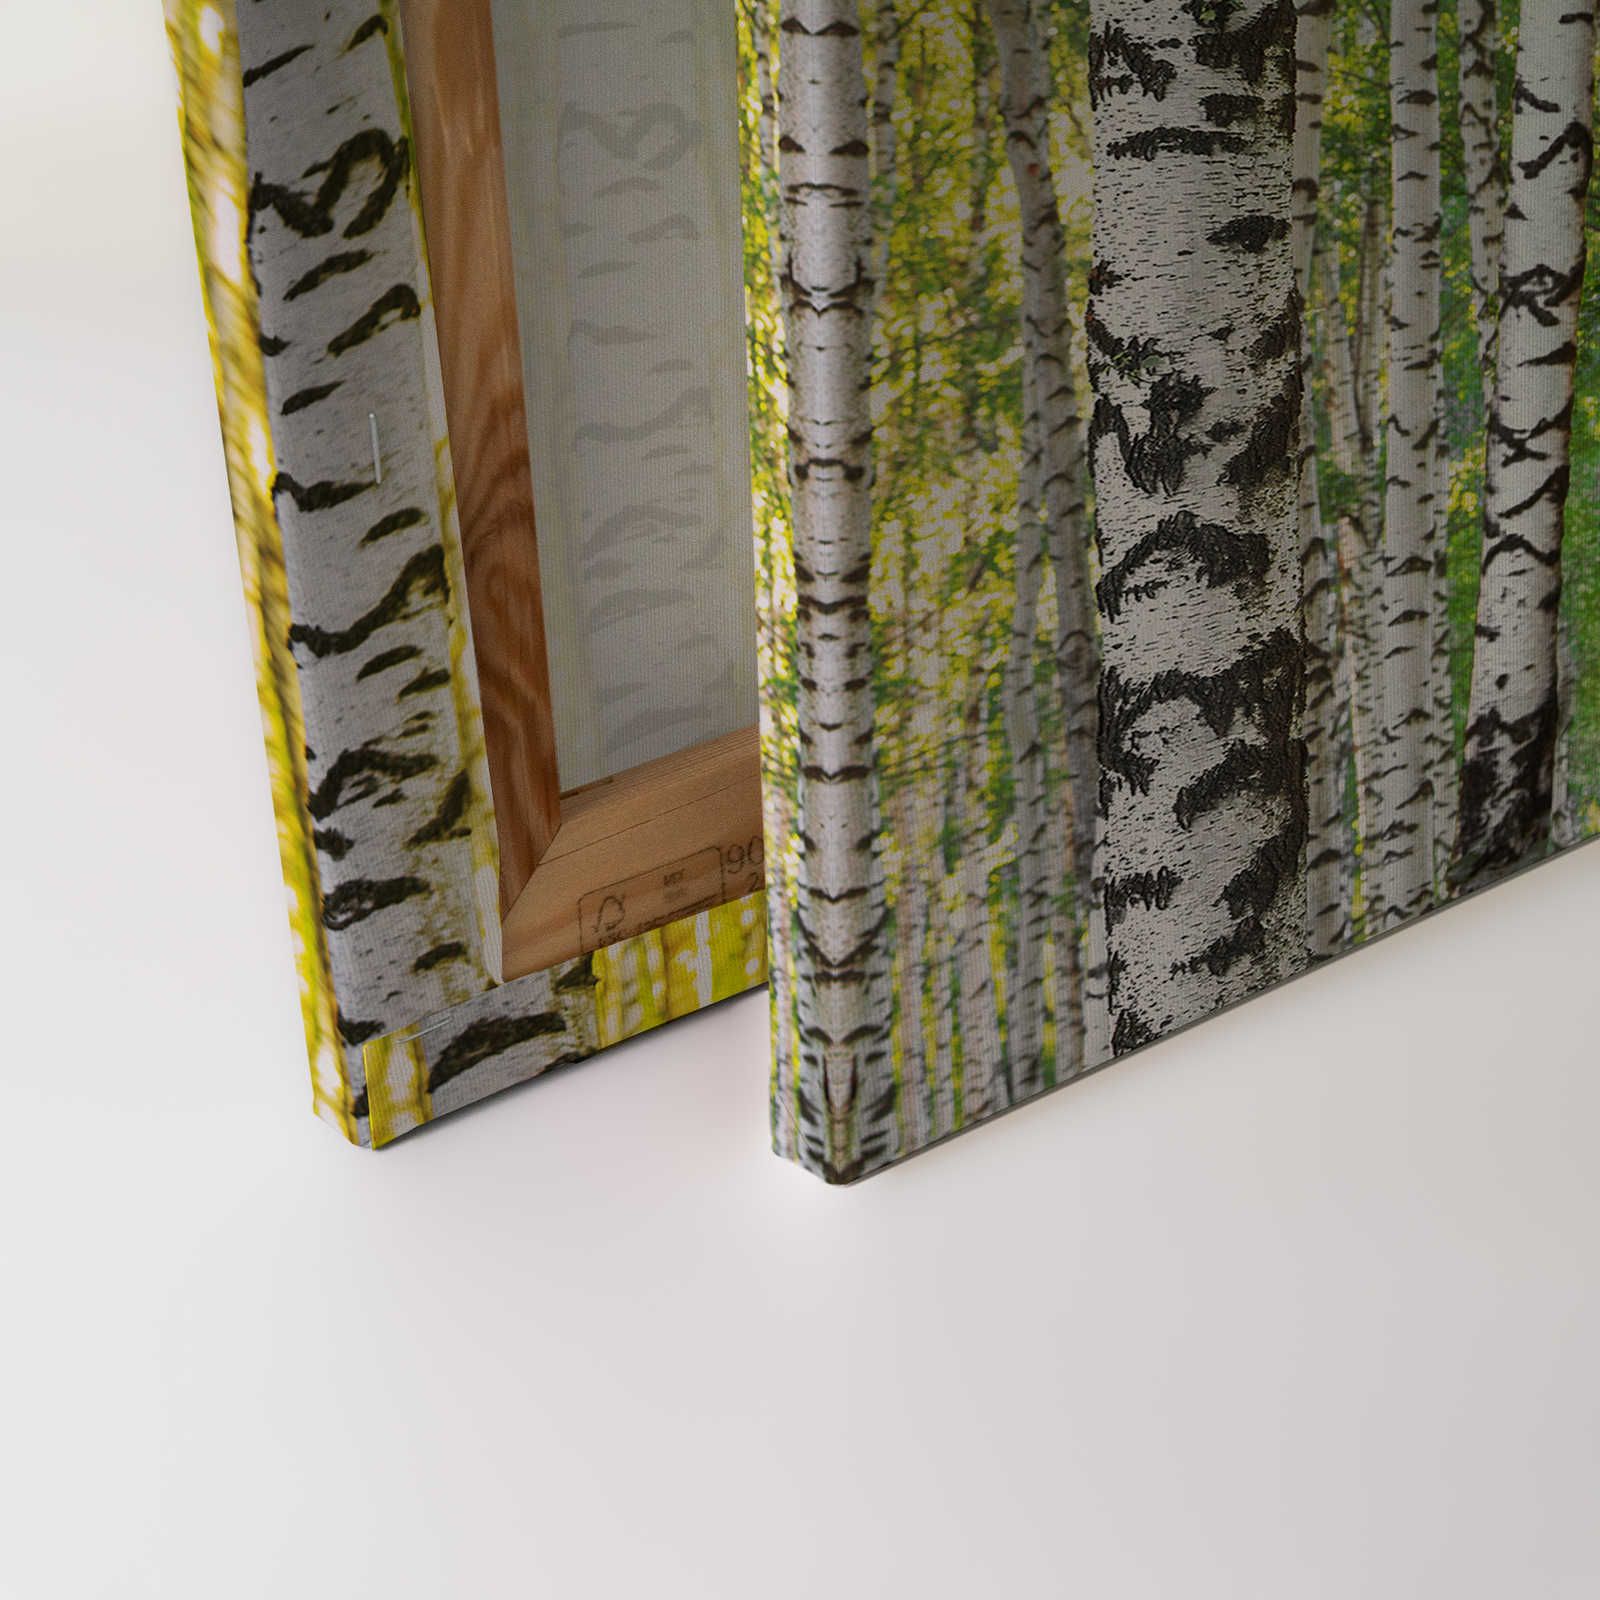             Forêt de bouleaux toile motif tronc d'arbre - 0,90 m x 0,60 m
        